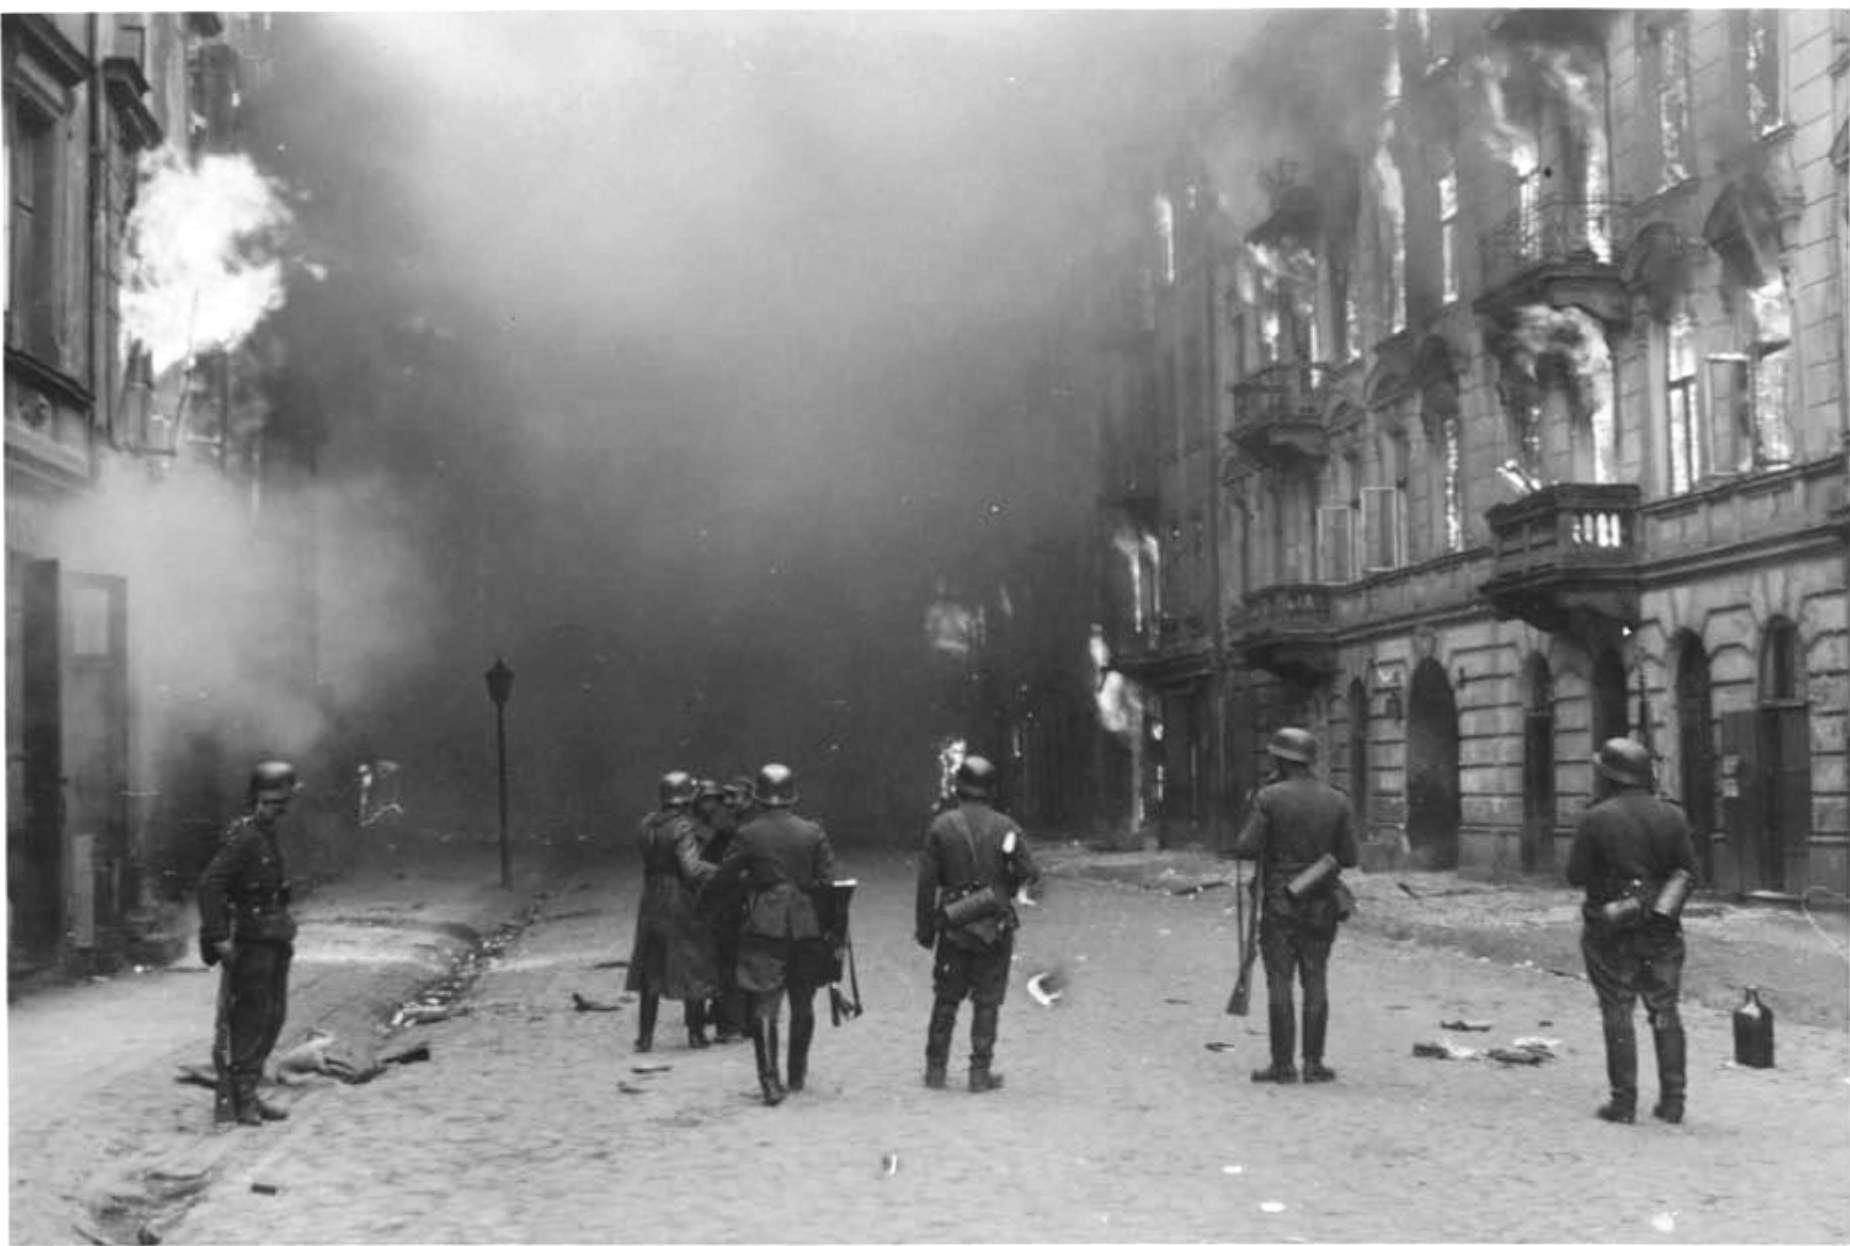 הבתים אפופי הלהבות והרחובות מלאי העשן ברחוב נוולופי בגטו ורשה במהלך המרד